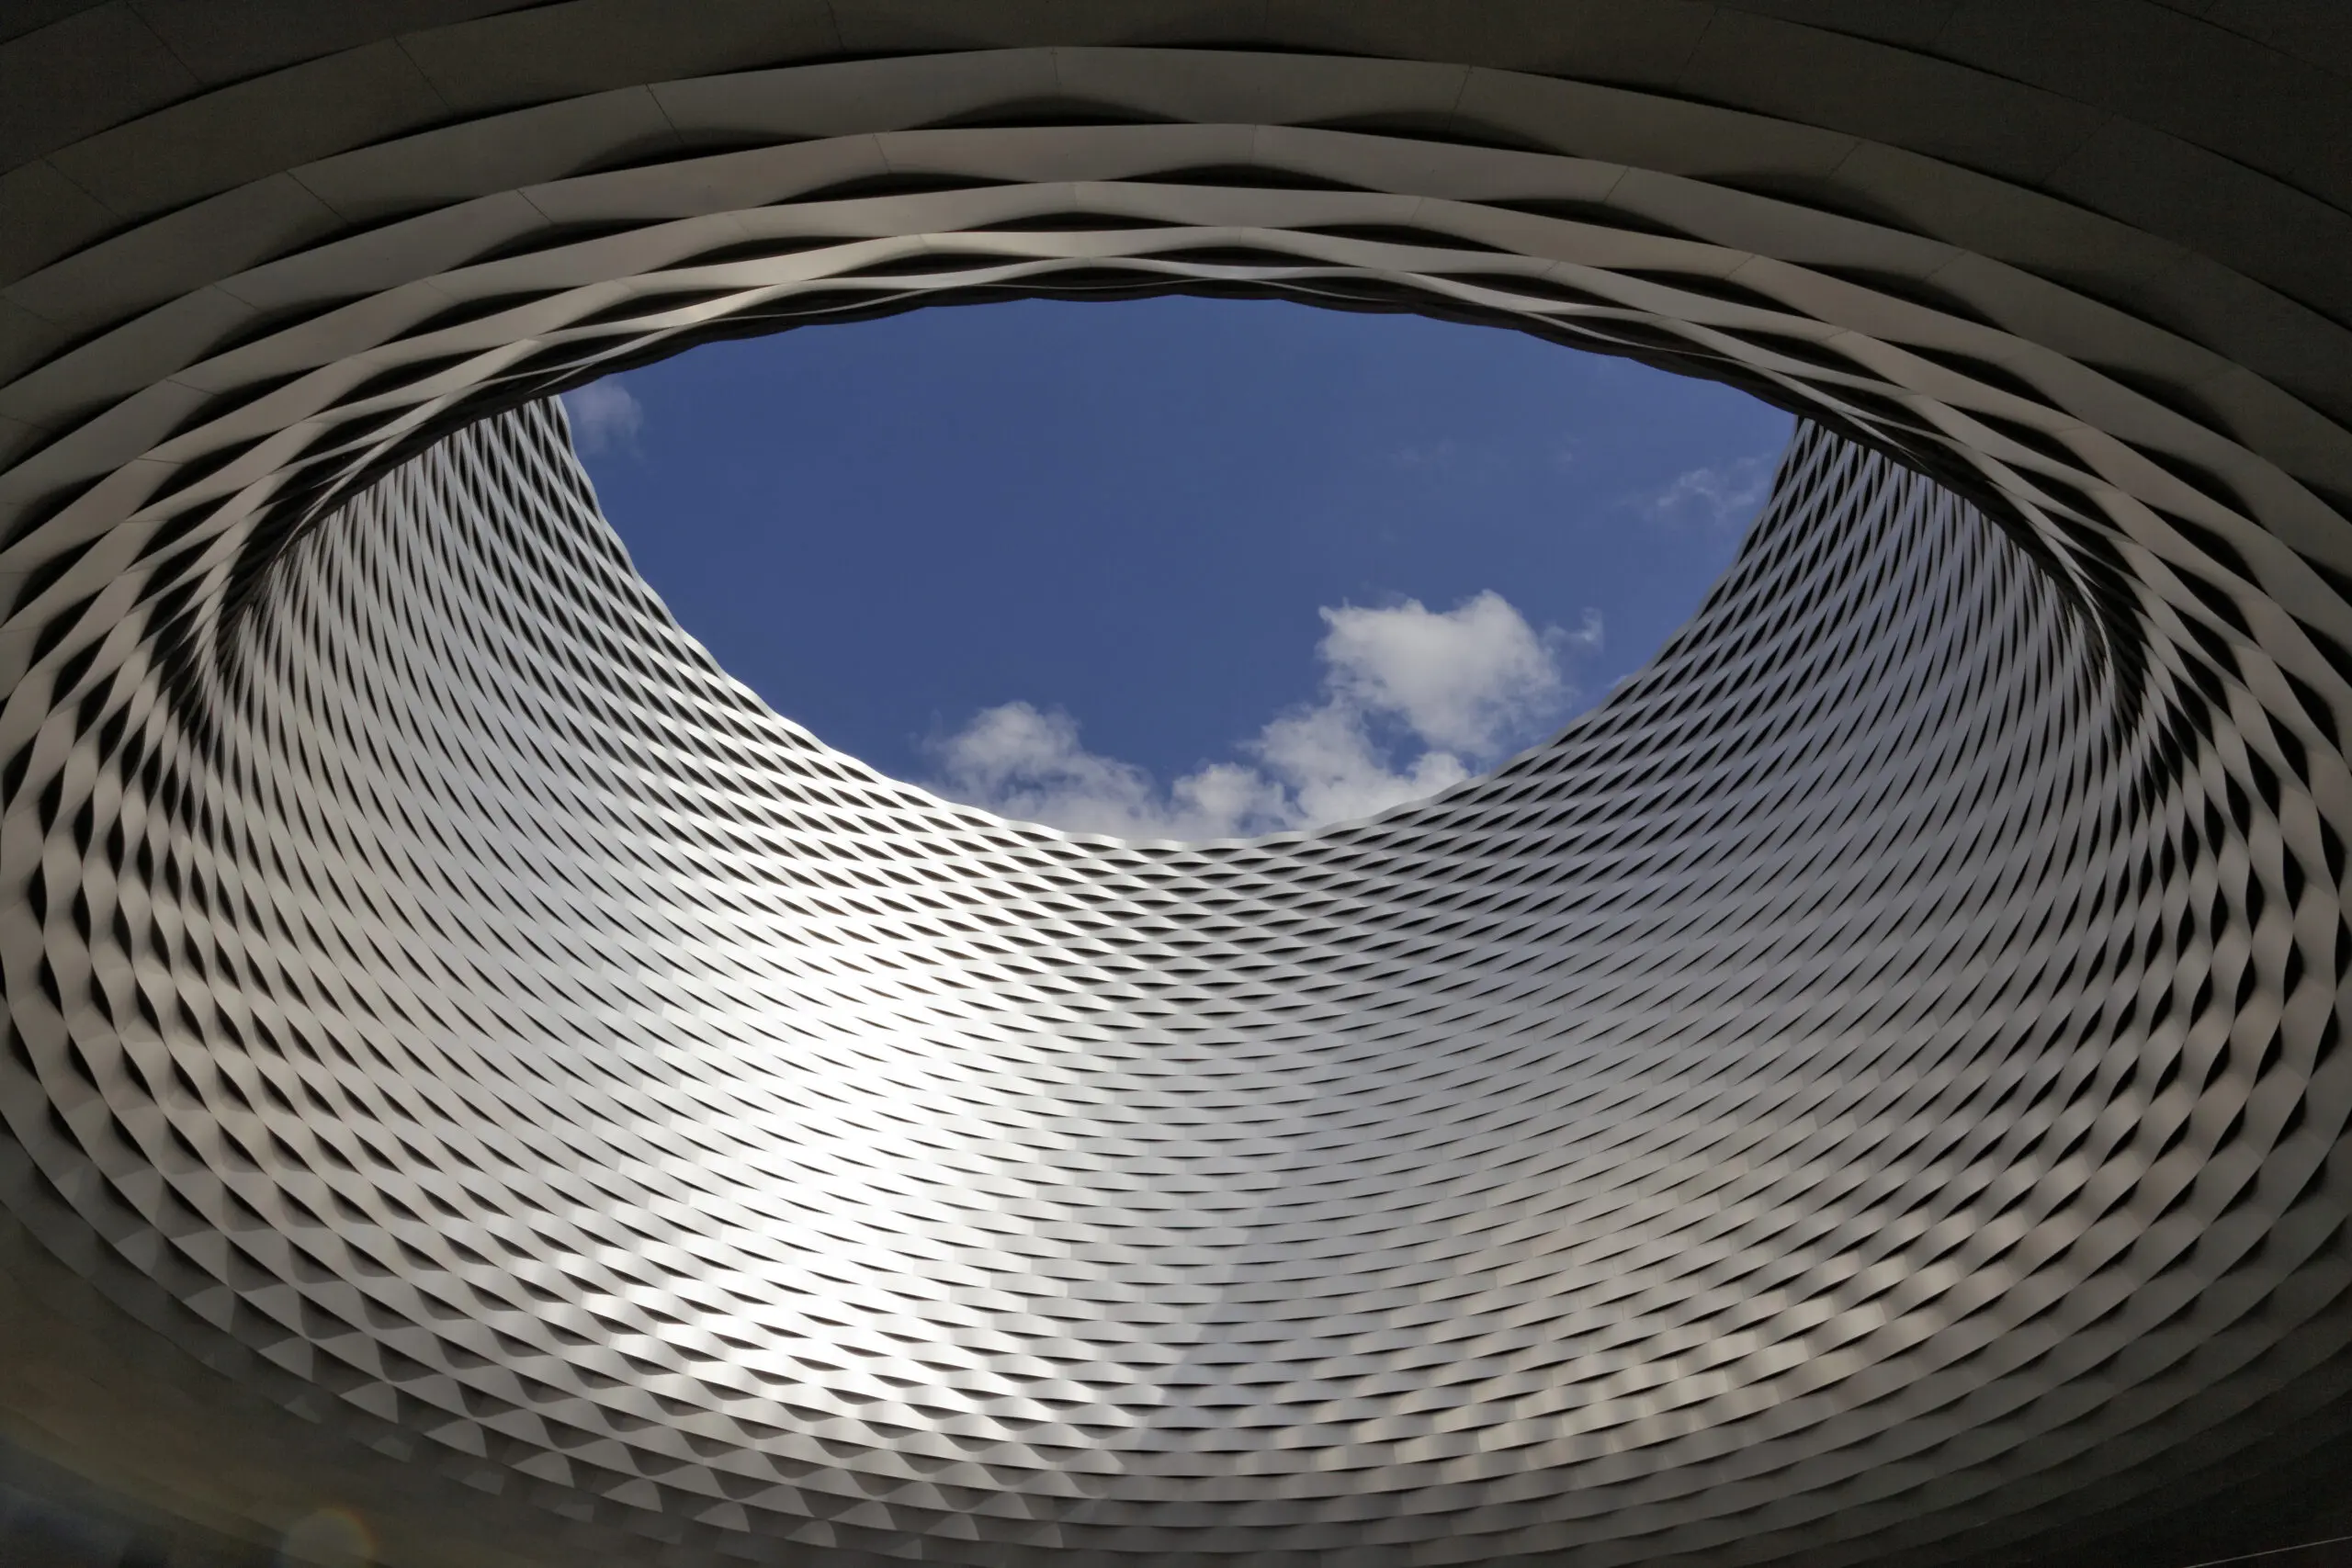 Wandbild (4504) Schulte-Kellinghaus – Messe Basel präsentiert: Details und Strukturen,Architektur,Detailaufnahmen,Sehenswürdigkeiten,Architekturdetails